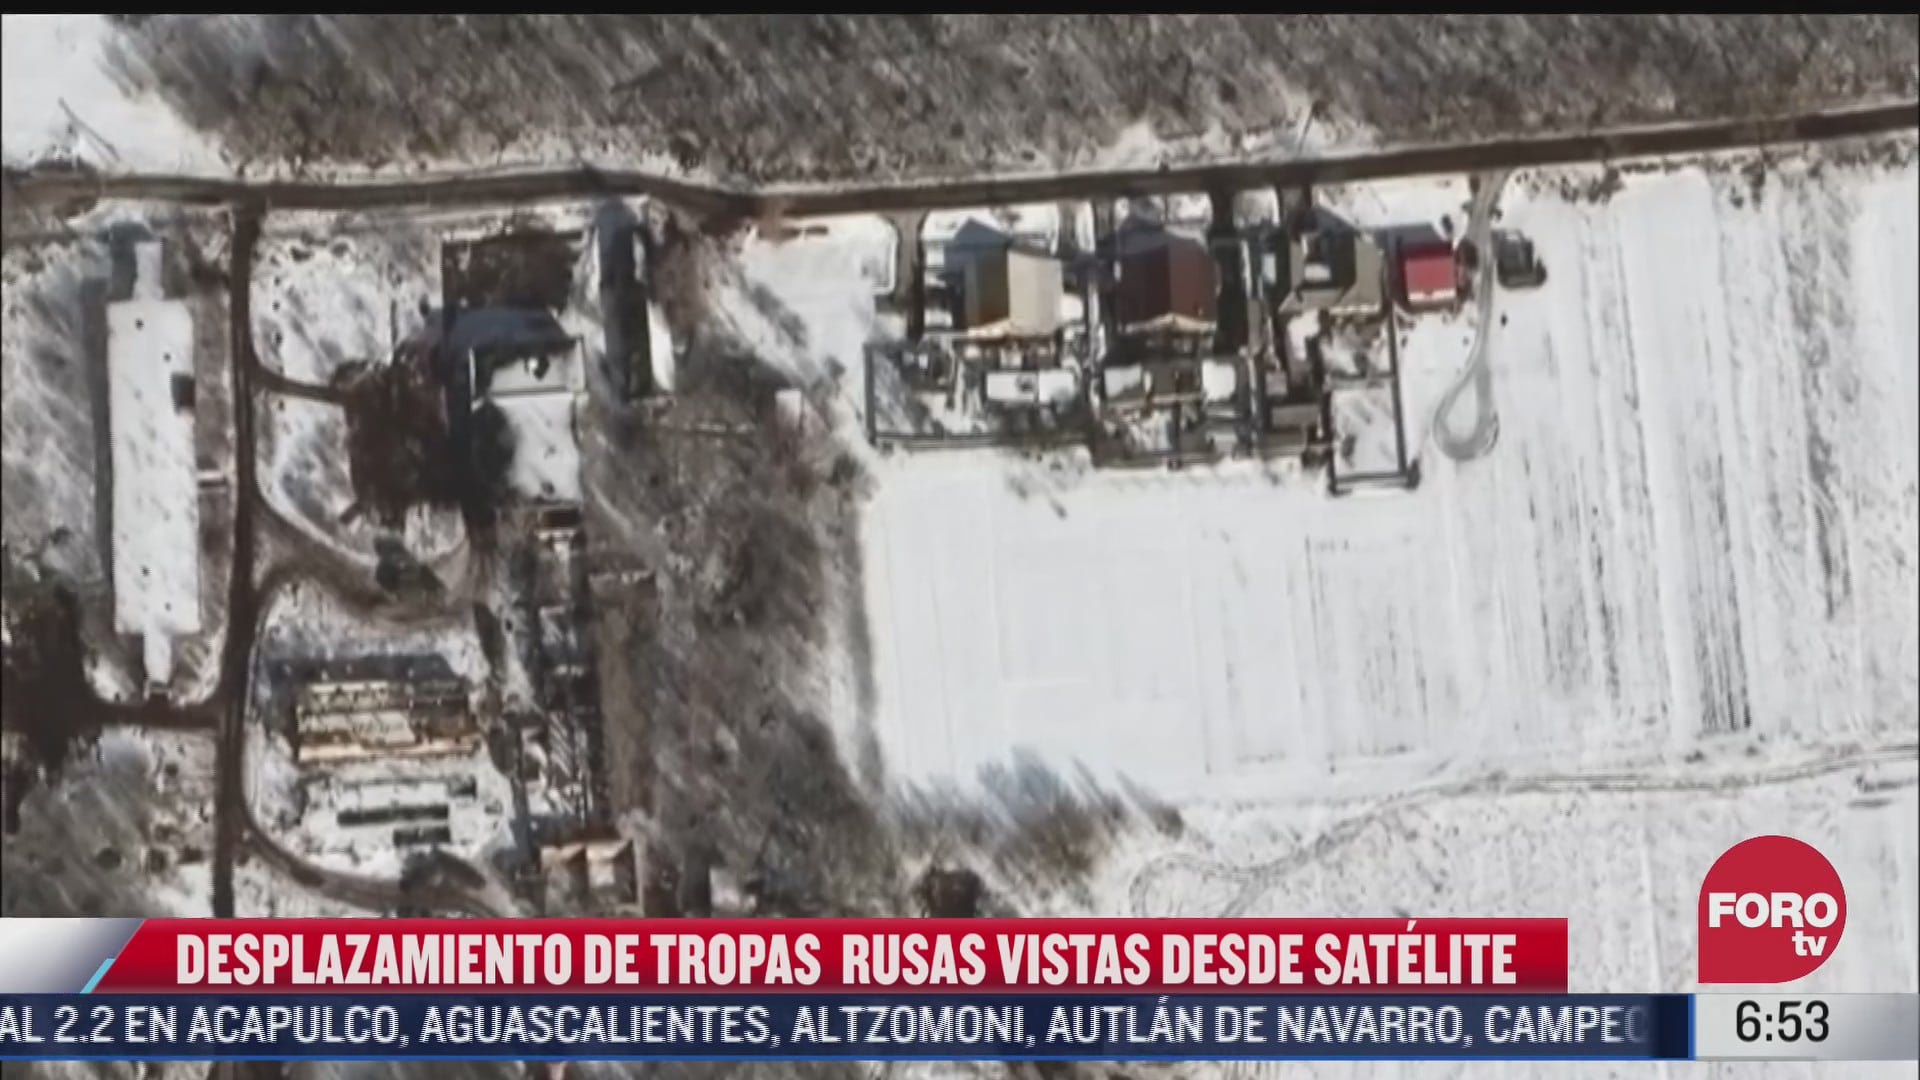 imagenes satelitales muestran desplazamiento de tropas rusas en frontera con ucrania